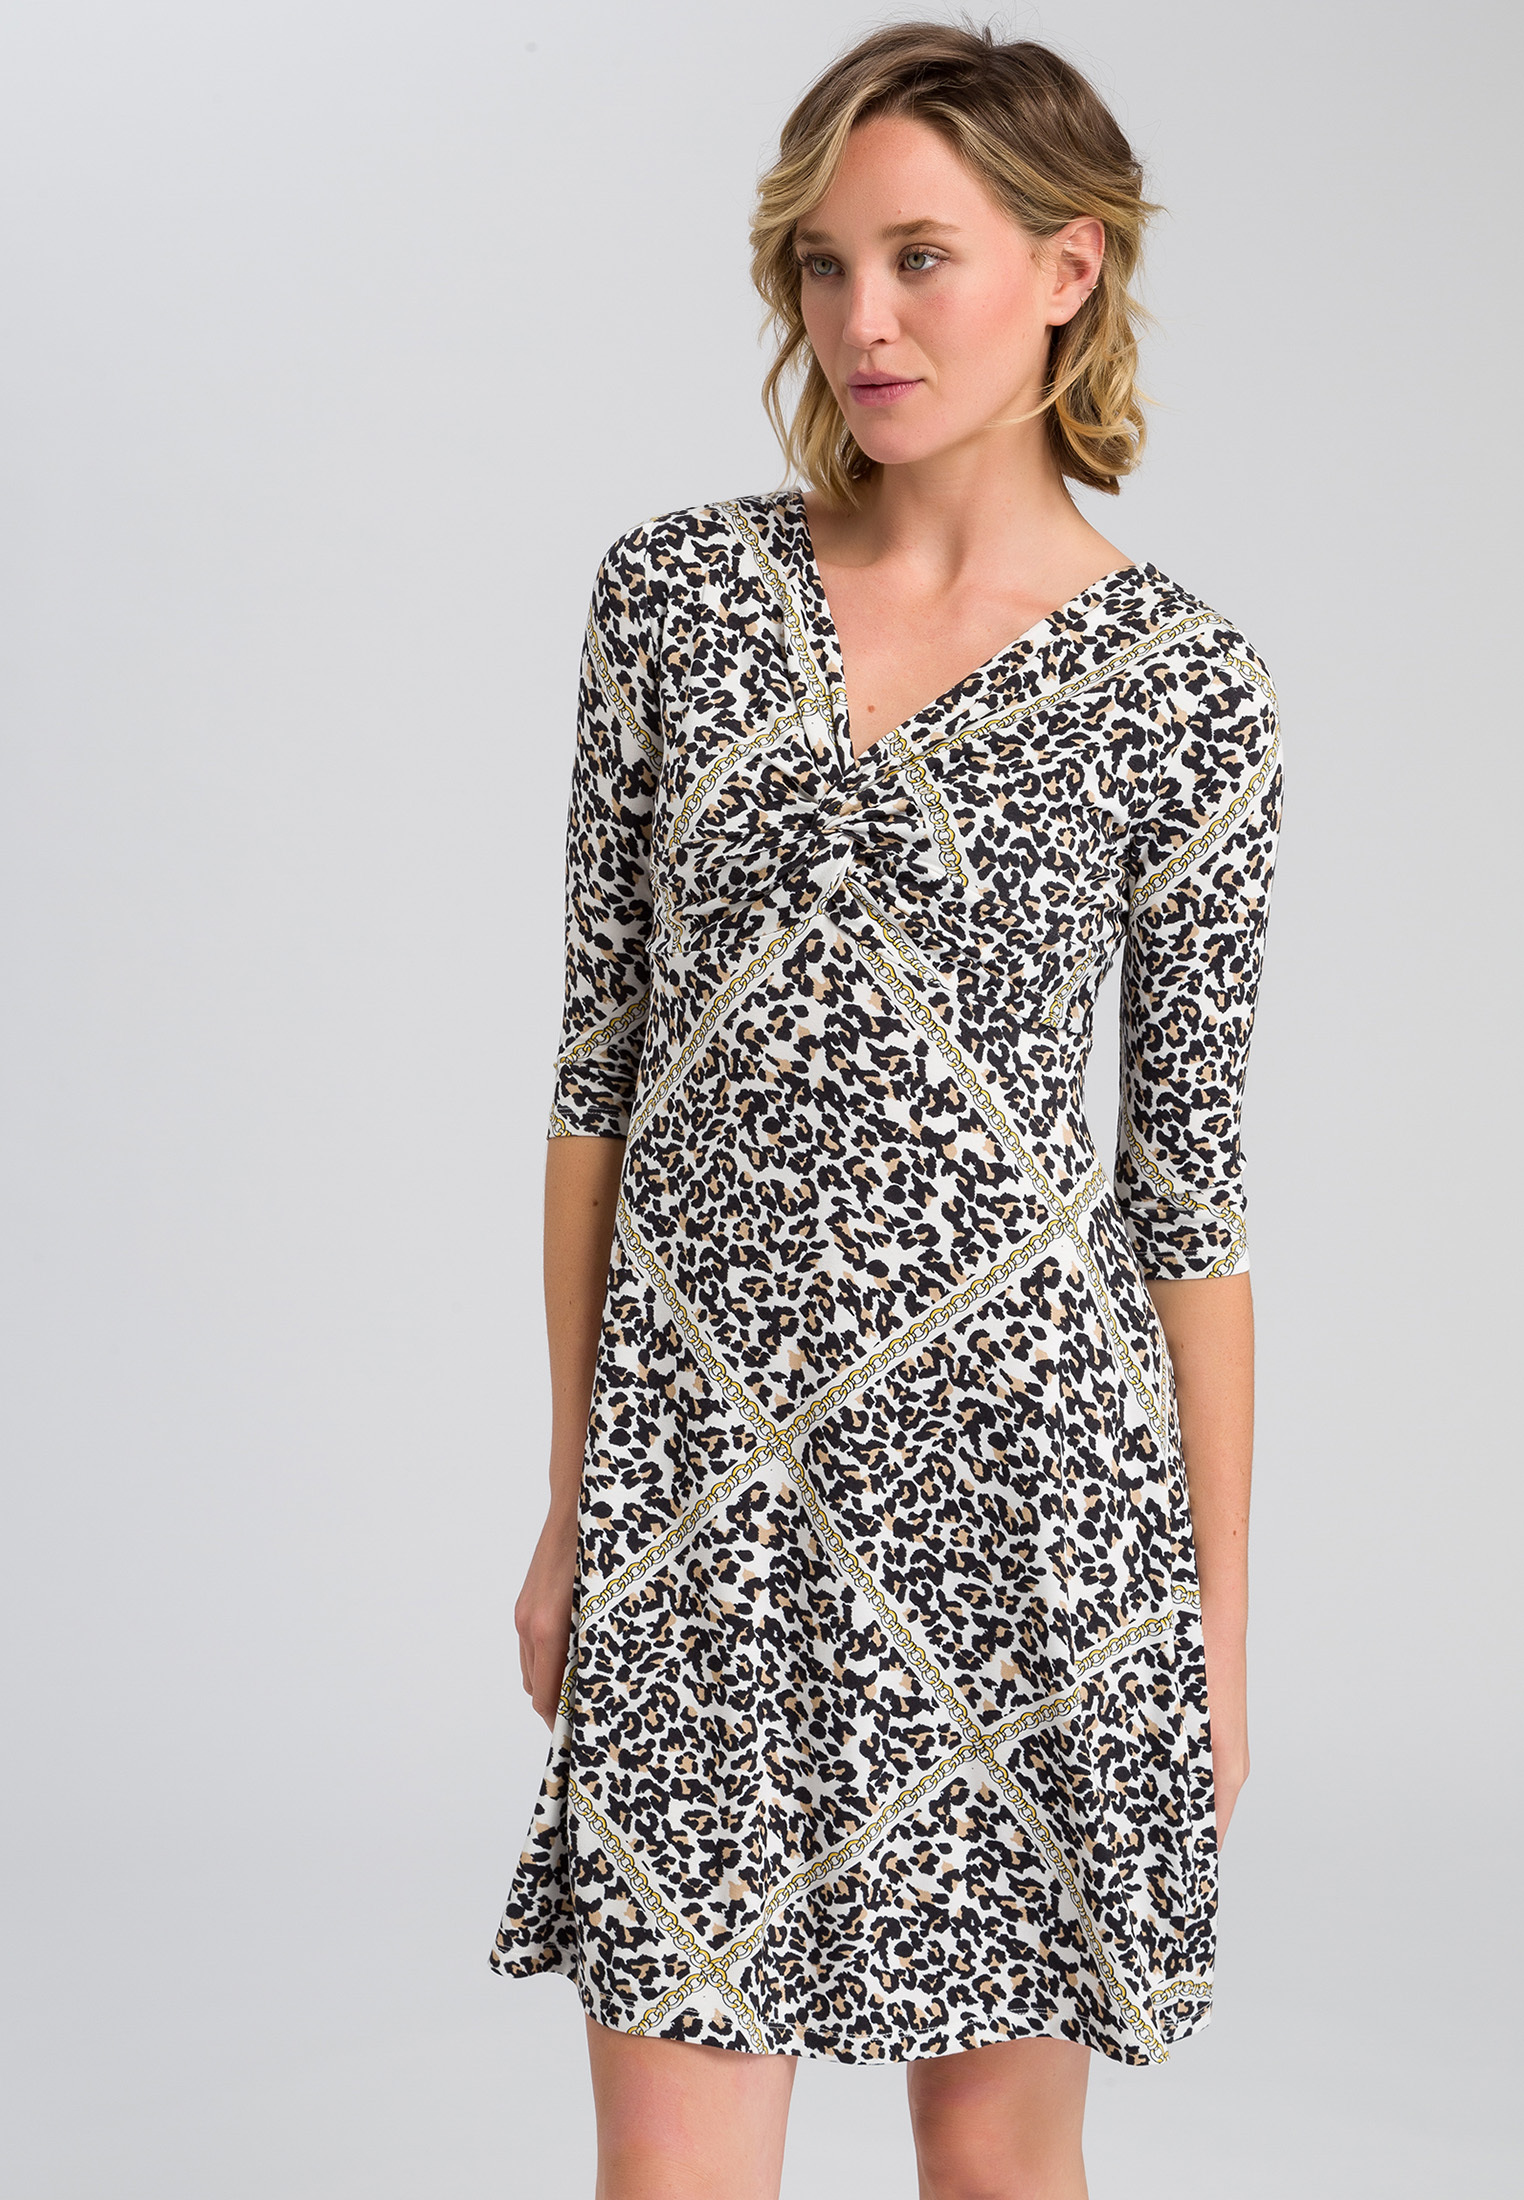 leopard jersey dress